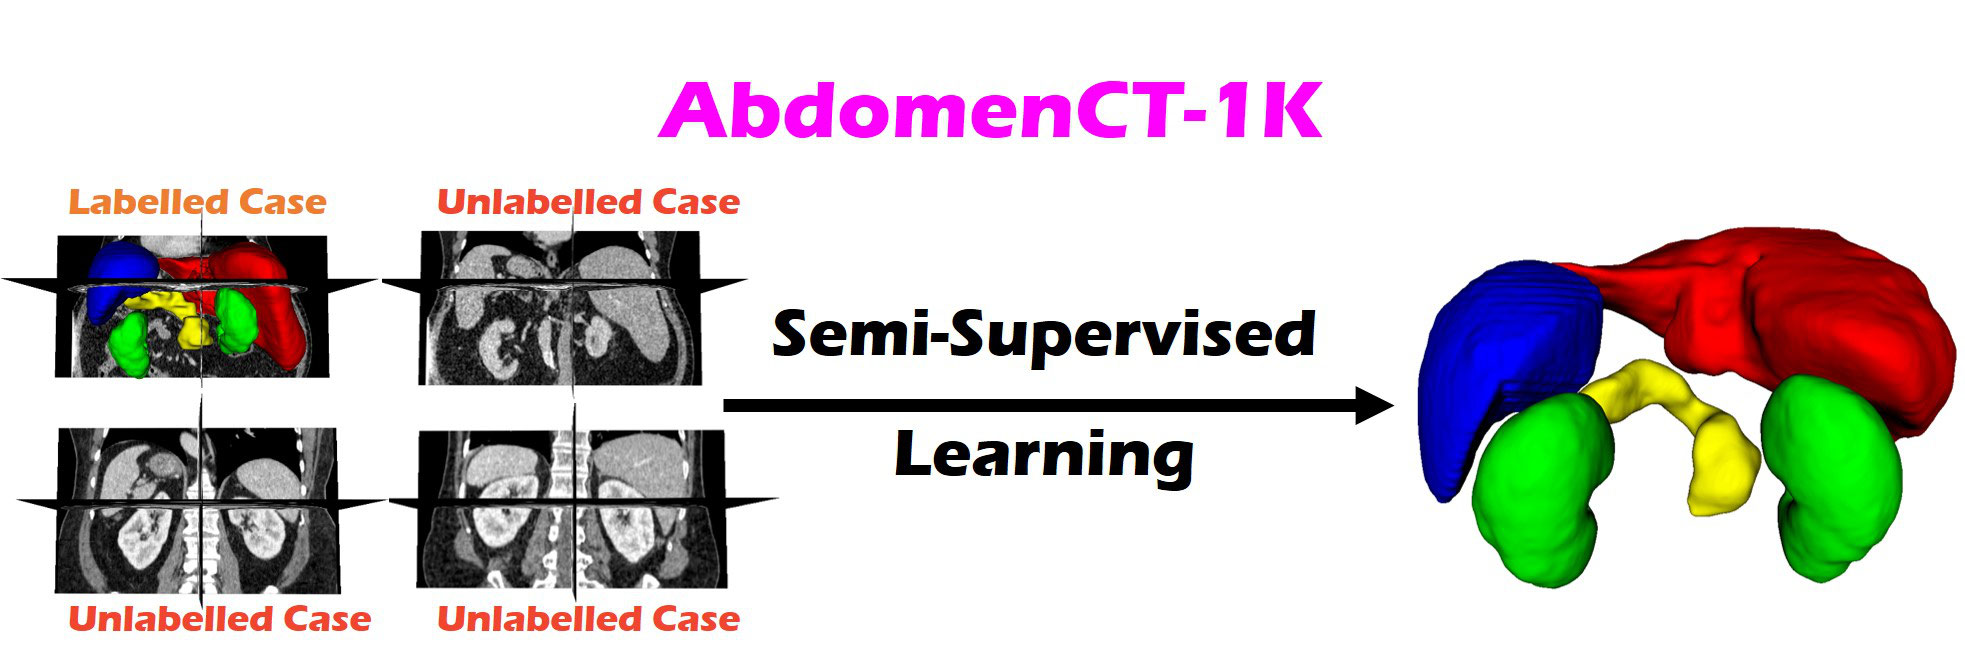 AbdomenCT-1K-Semi-supervised-Learning Banner